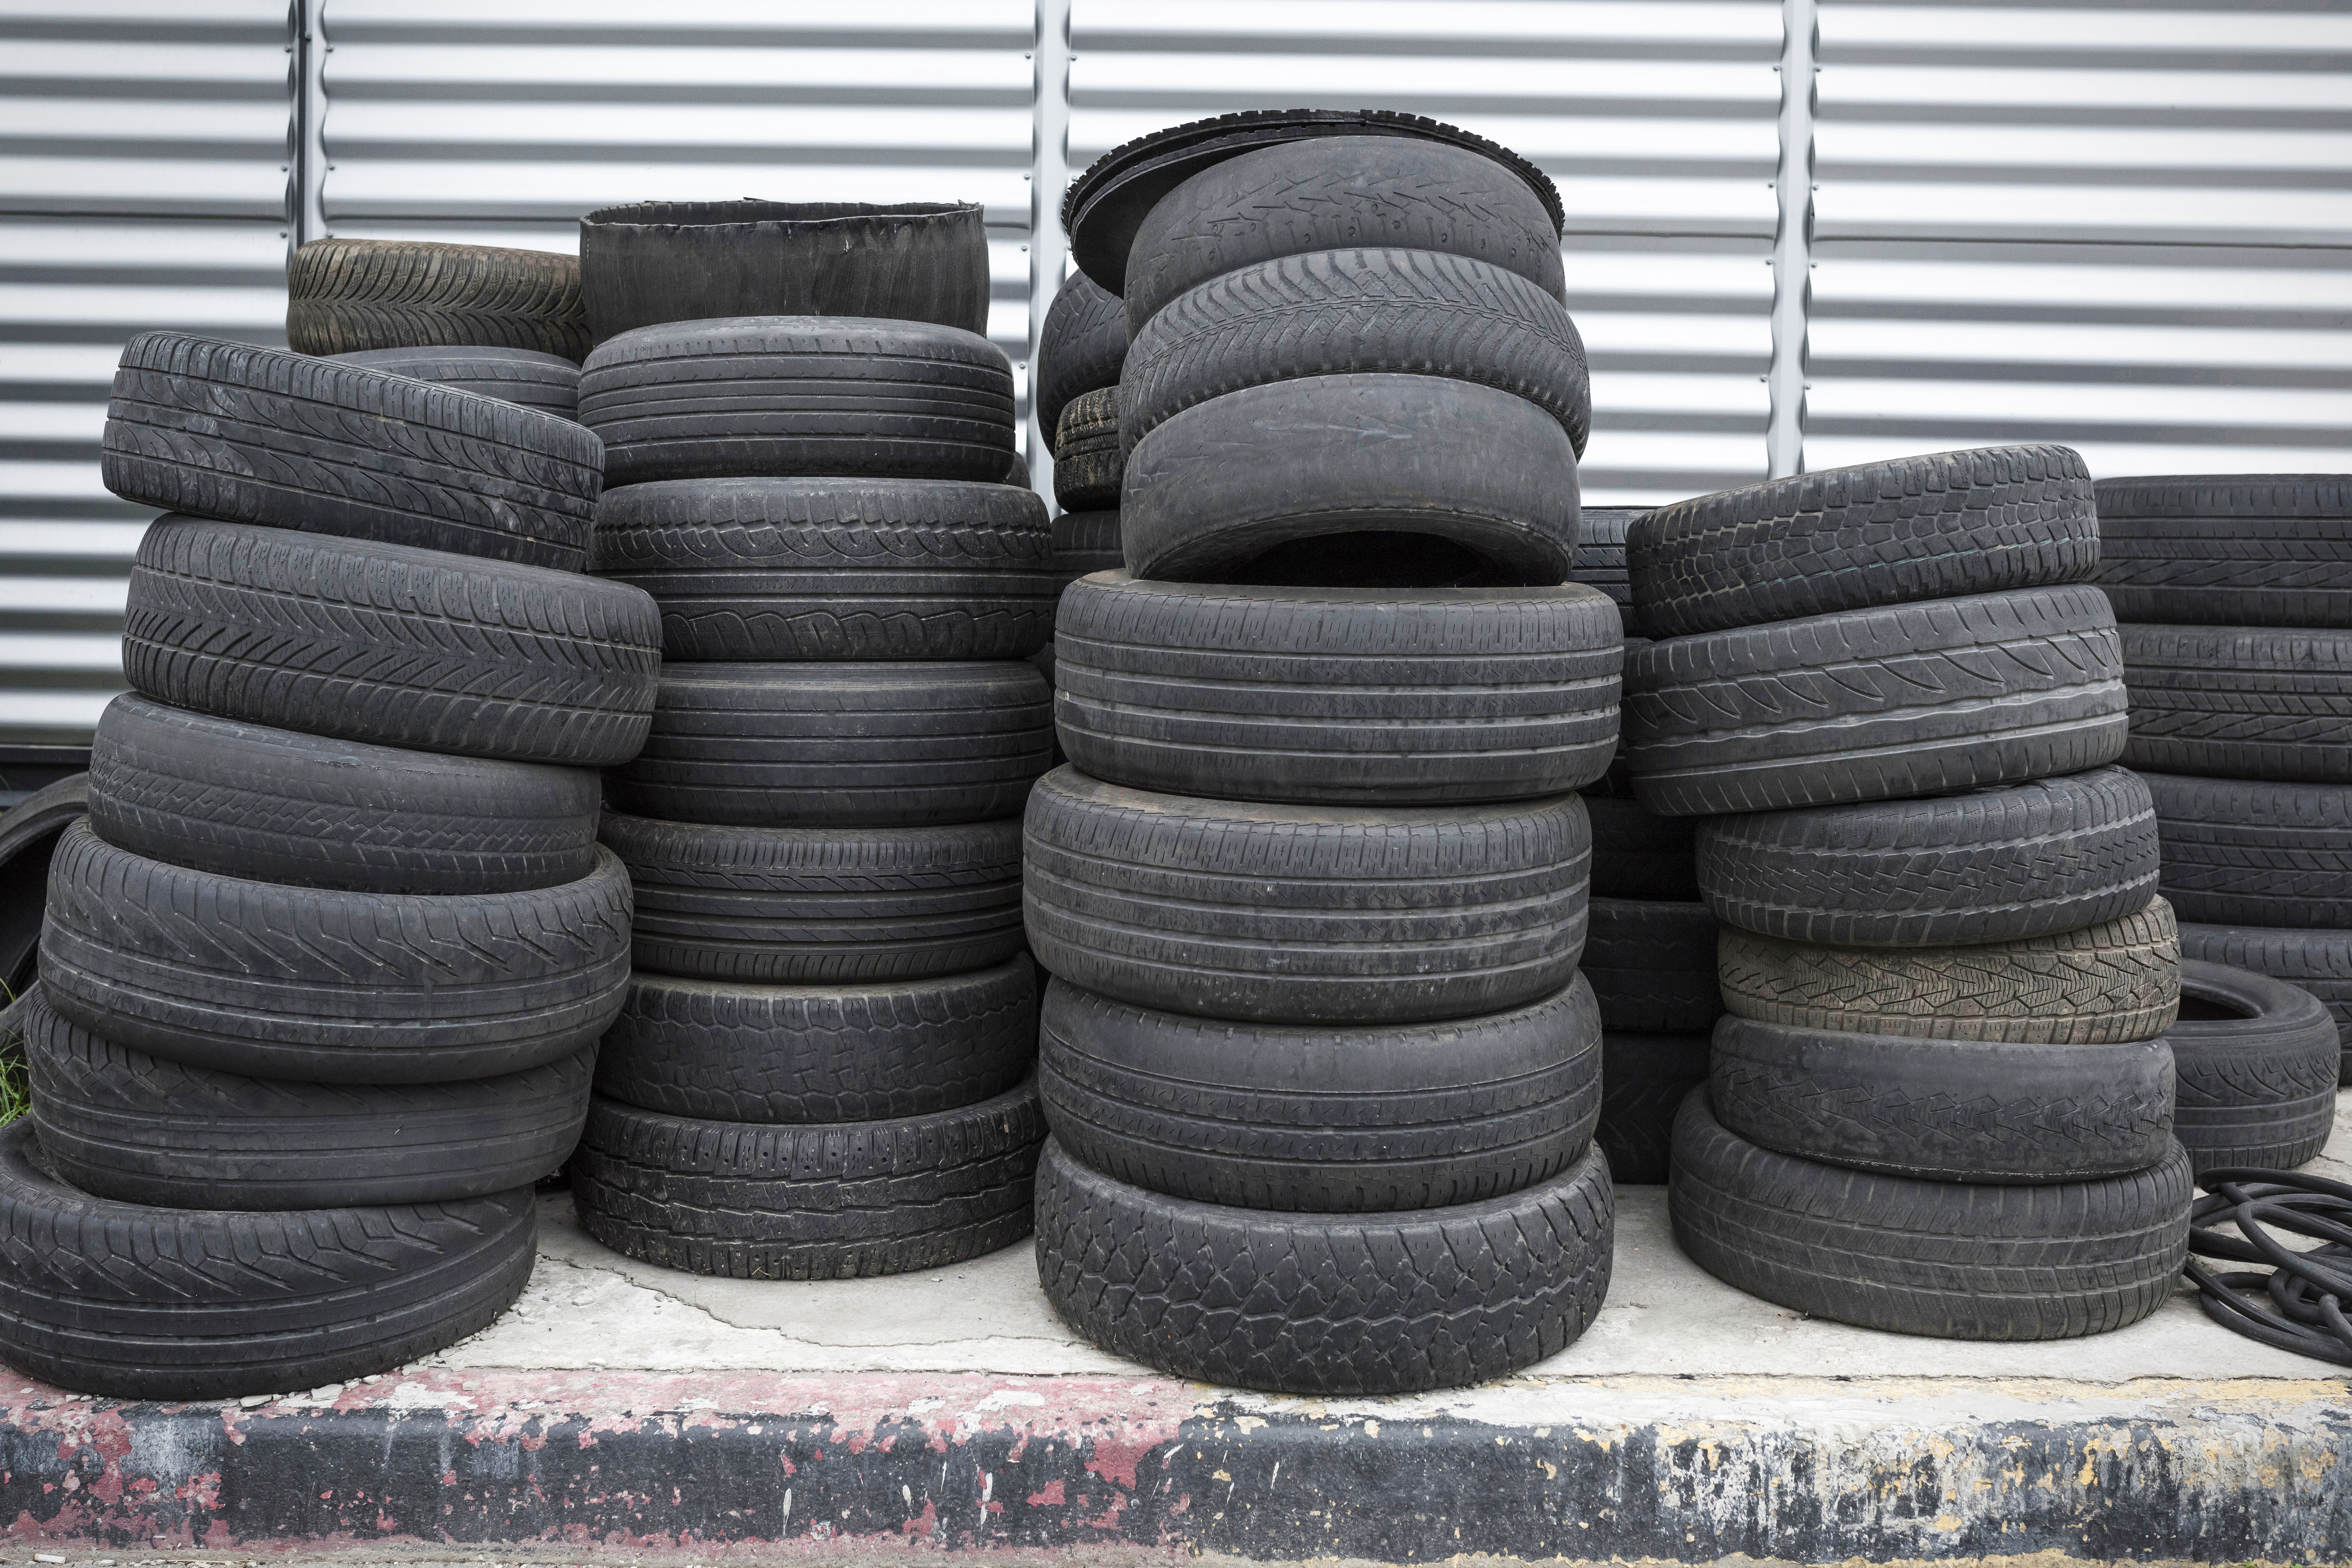 La corretta gestione degli pneumatici usati: un impegno per l’ambiente